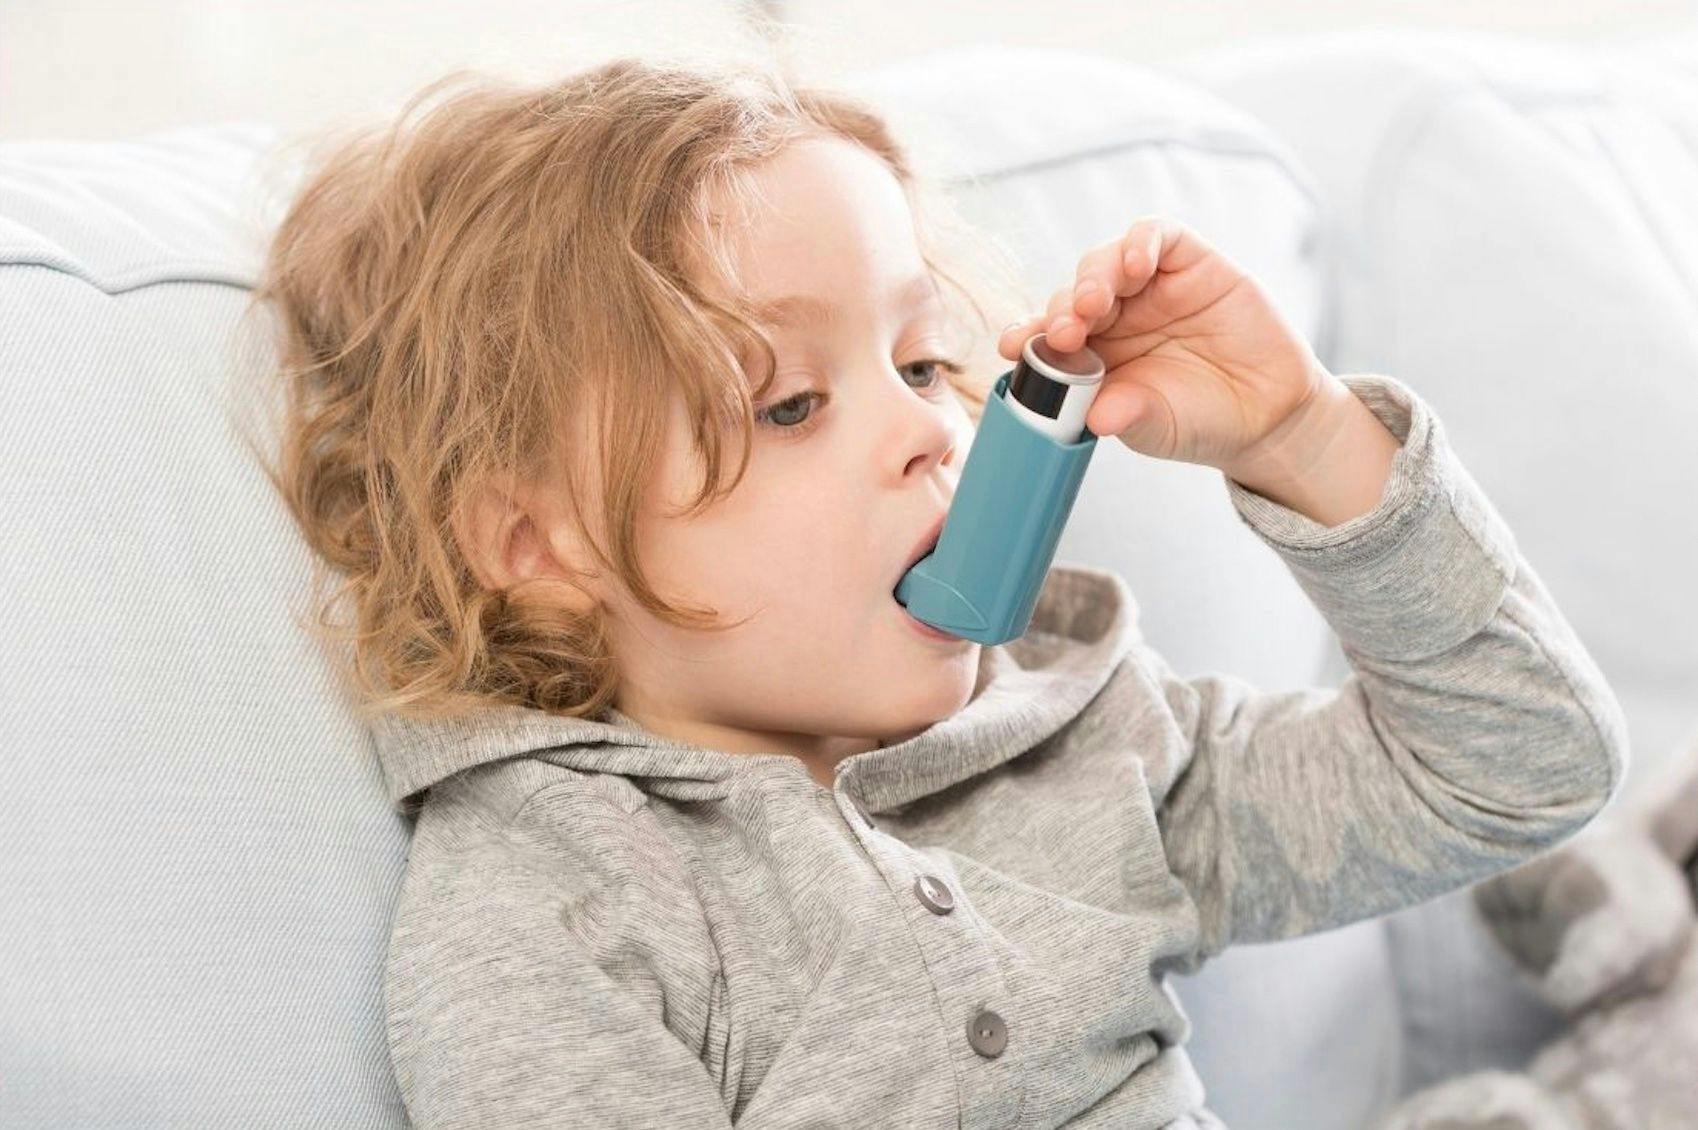 child with inhaler